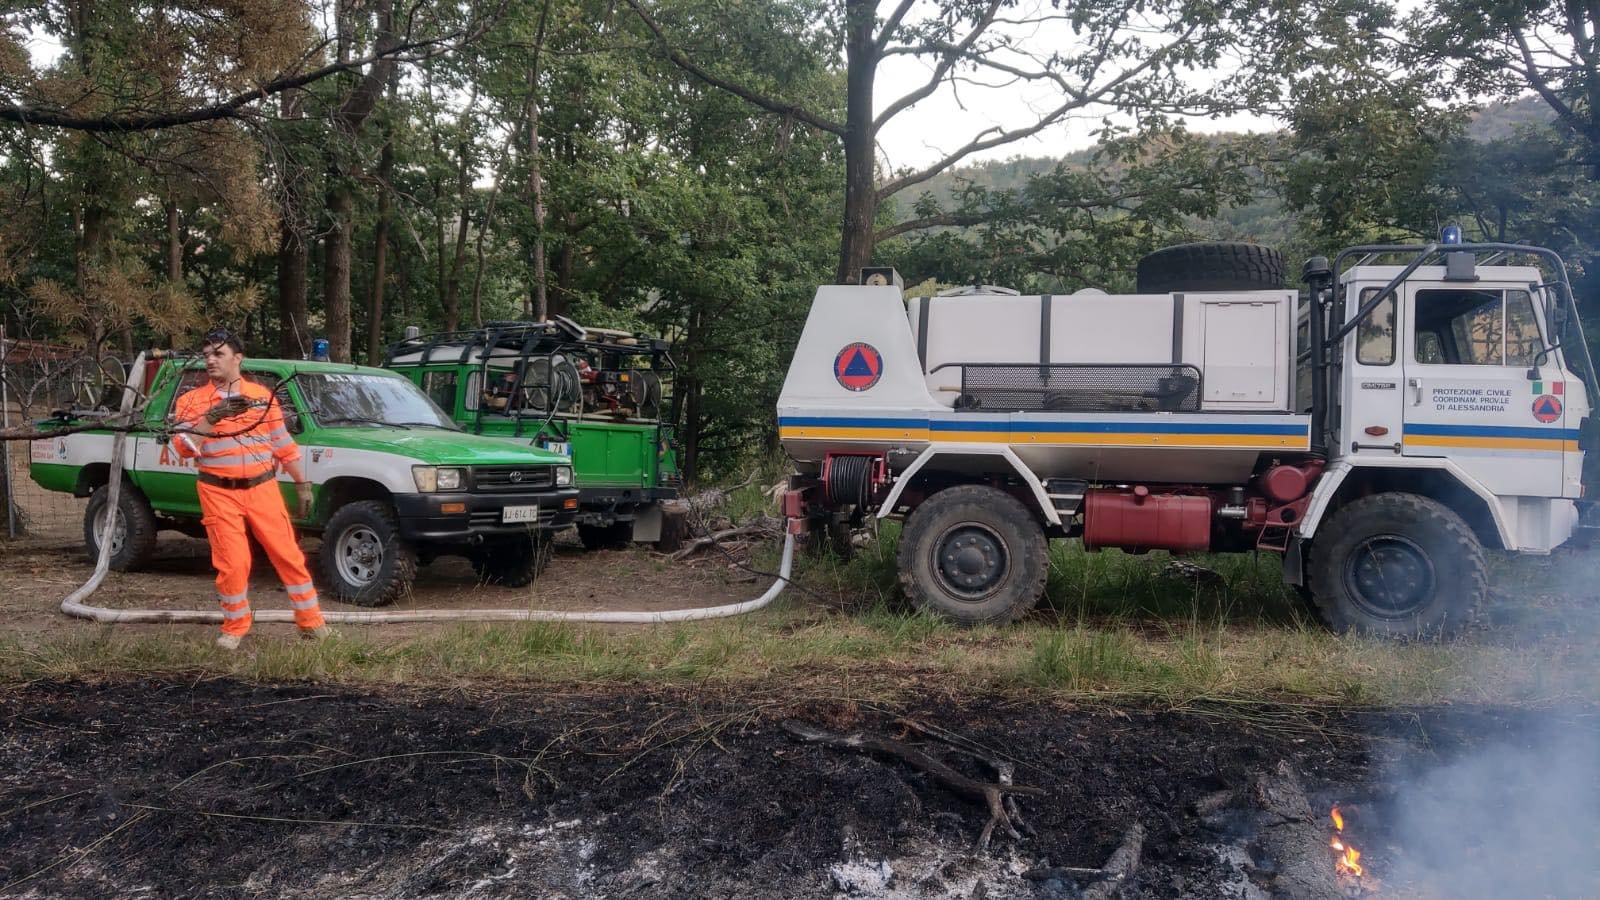 Risolto dopo ore l’incendio nei boschi divampato a Morbello